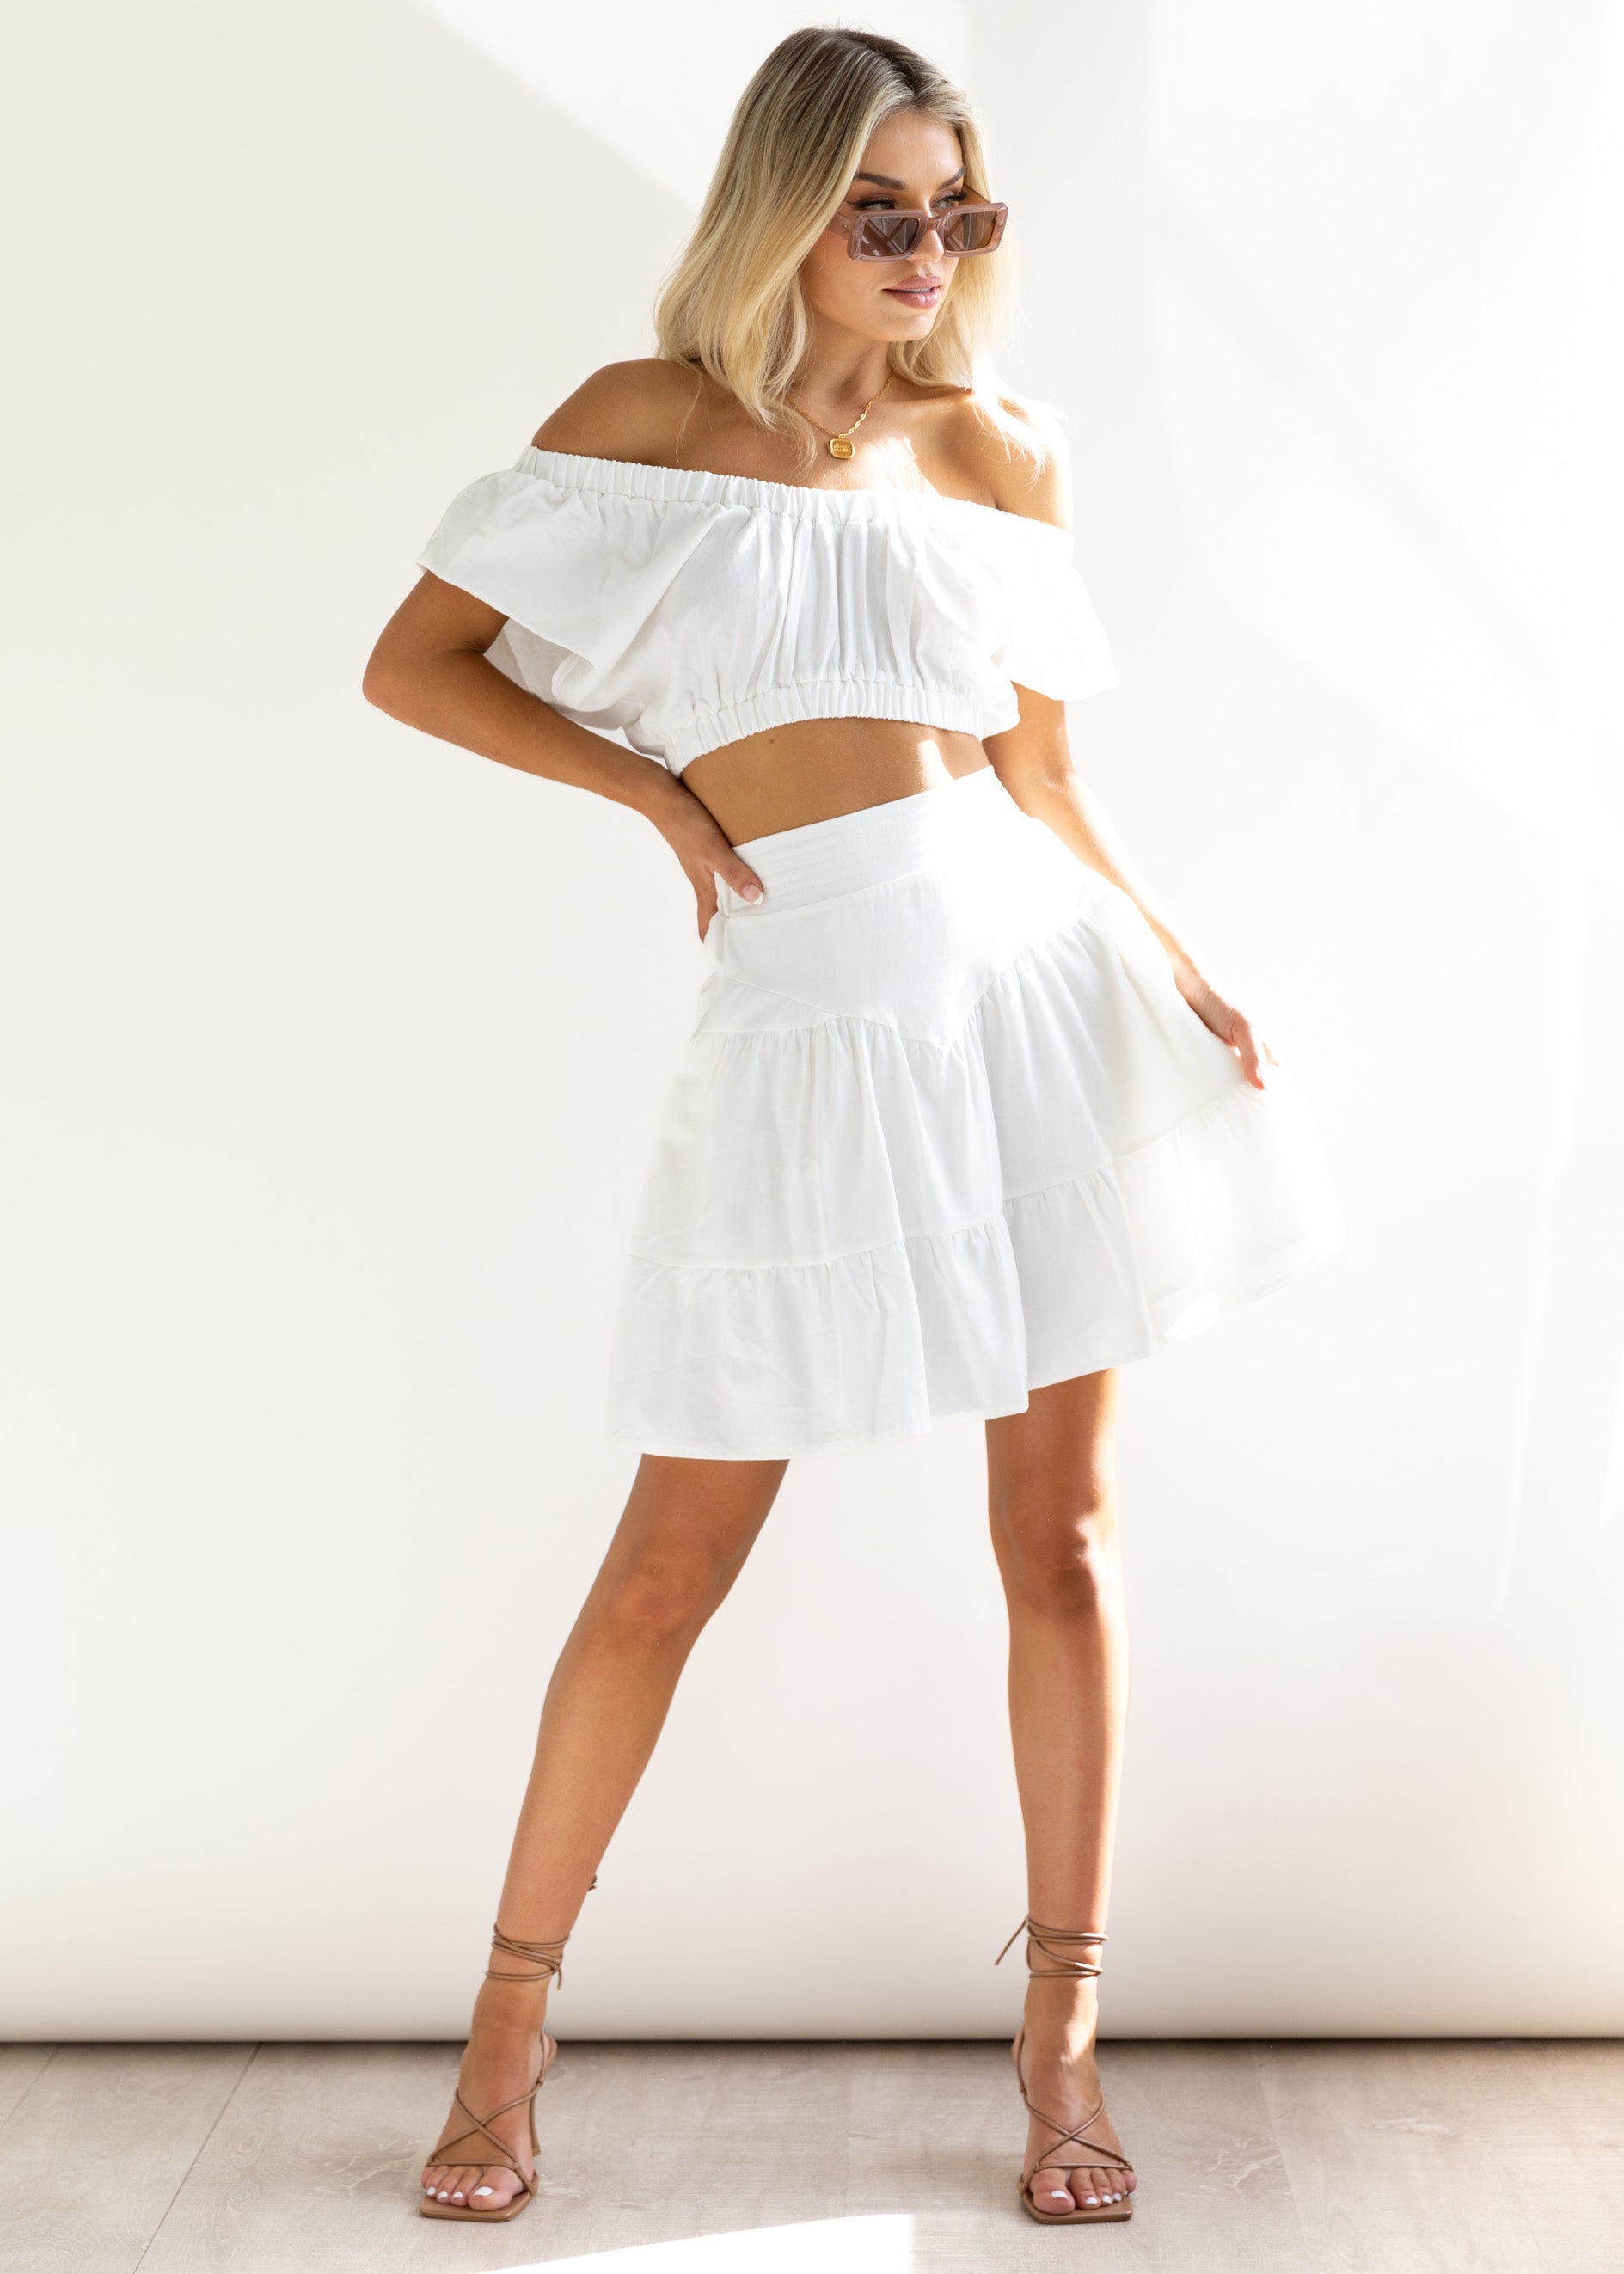 Clarice Skirt - Off White